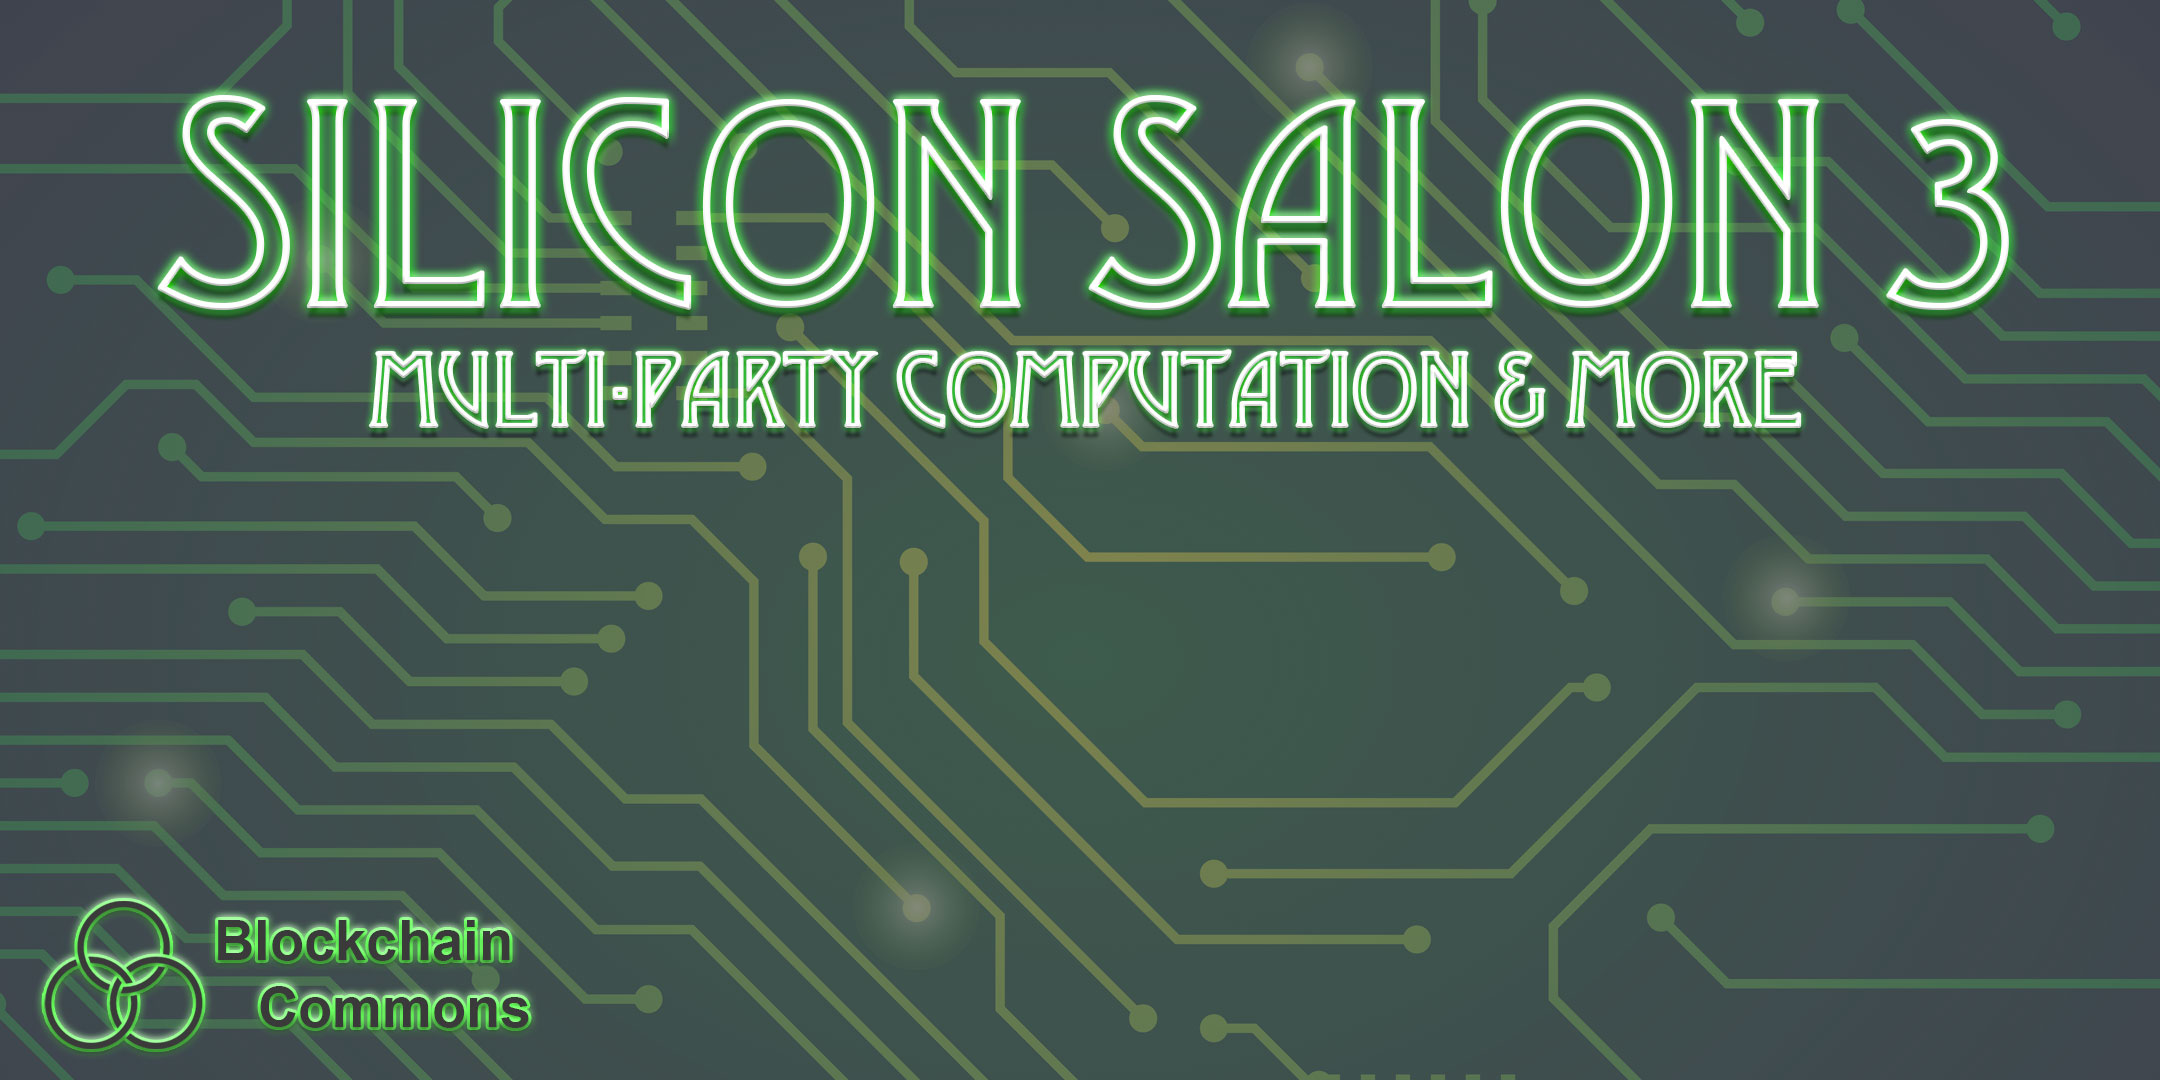 Silicon Salon 3